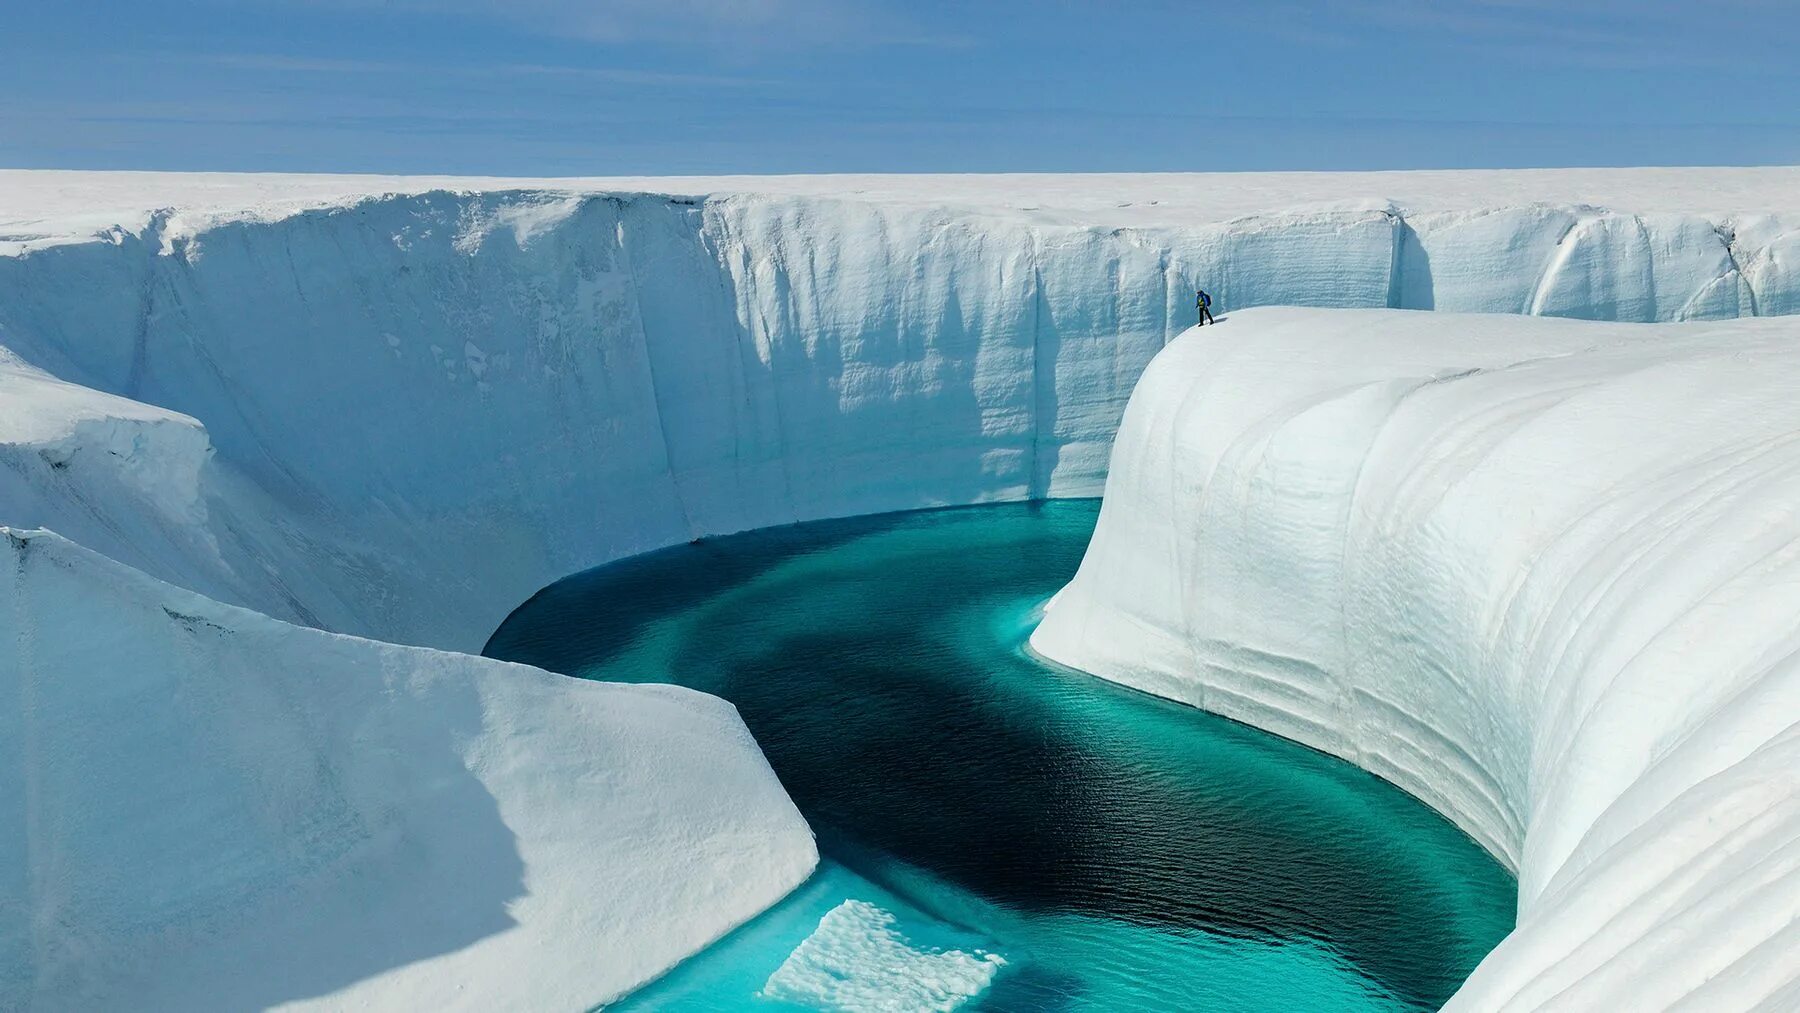 Ледяной каньон Гренландия. Большой каньон в Гренландии. Голубая река в леднике Гренландия. Ледник Булуус. Самой айс